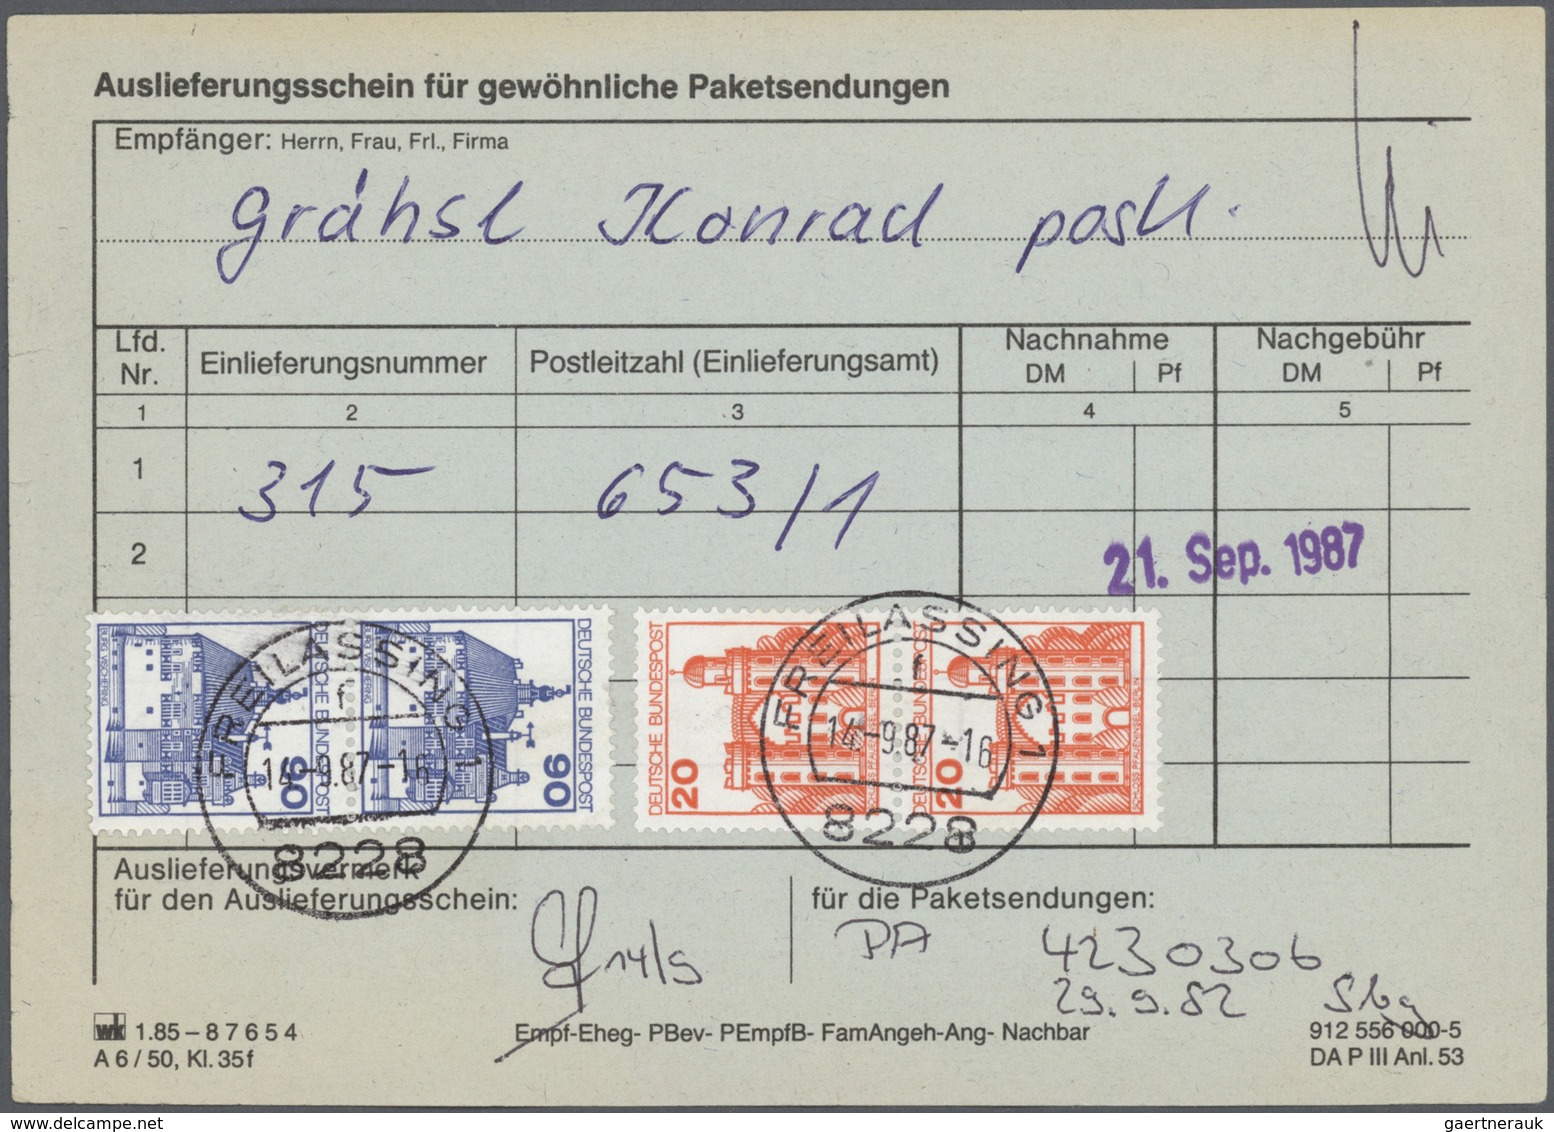 Bundesrepublik Deutschland: 1949/1990 (ca.), vielseitiger Bestand von ca. 420 Briefen und Karten mit